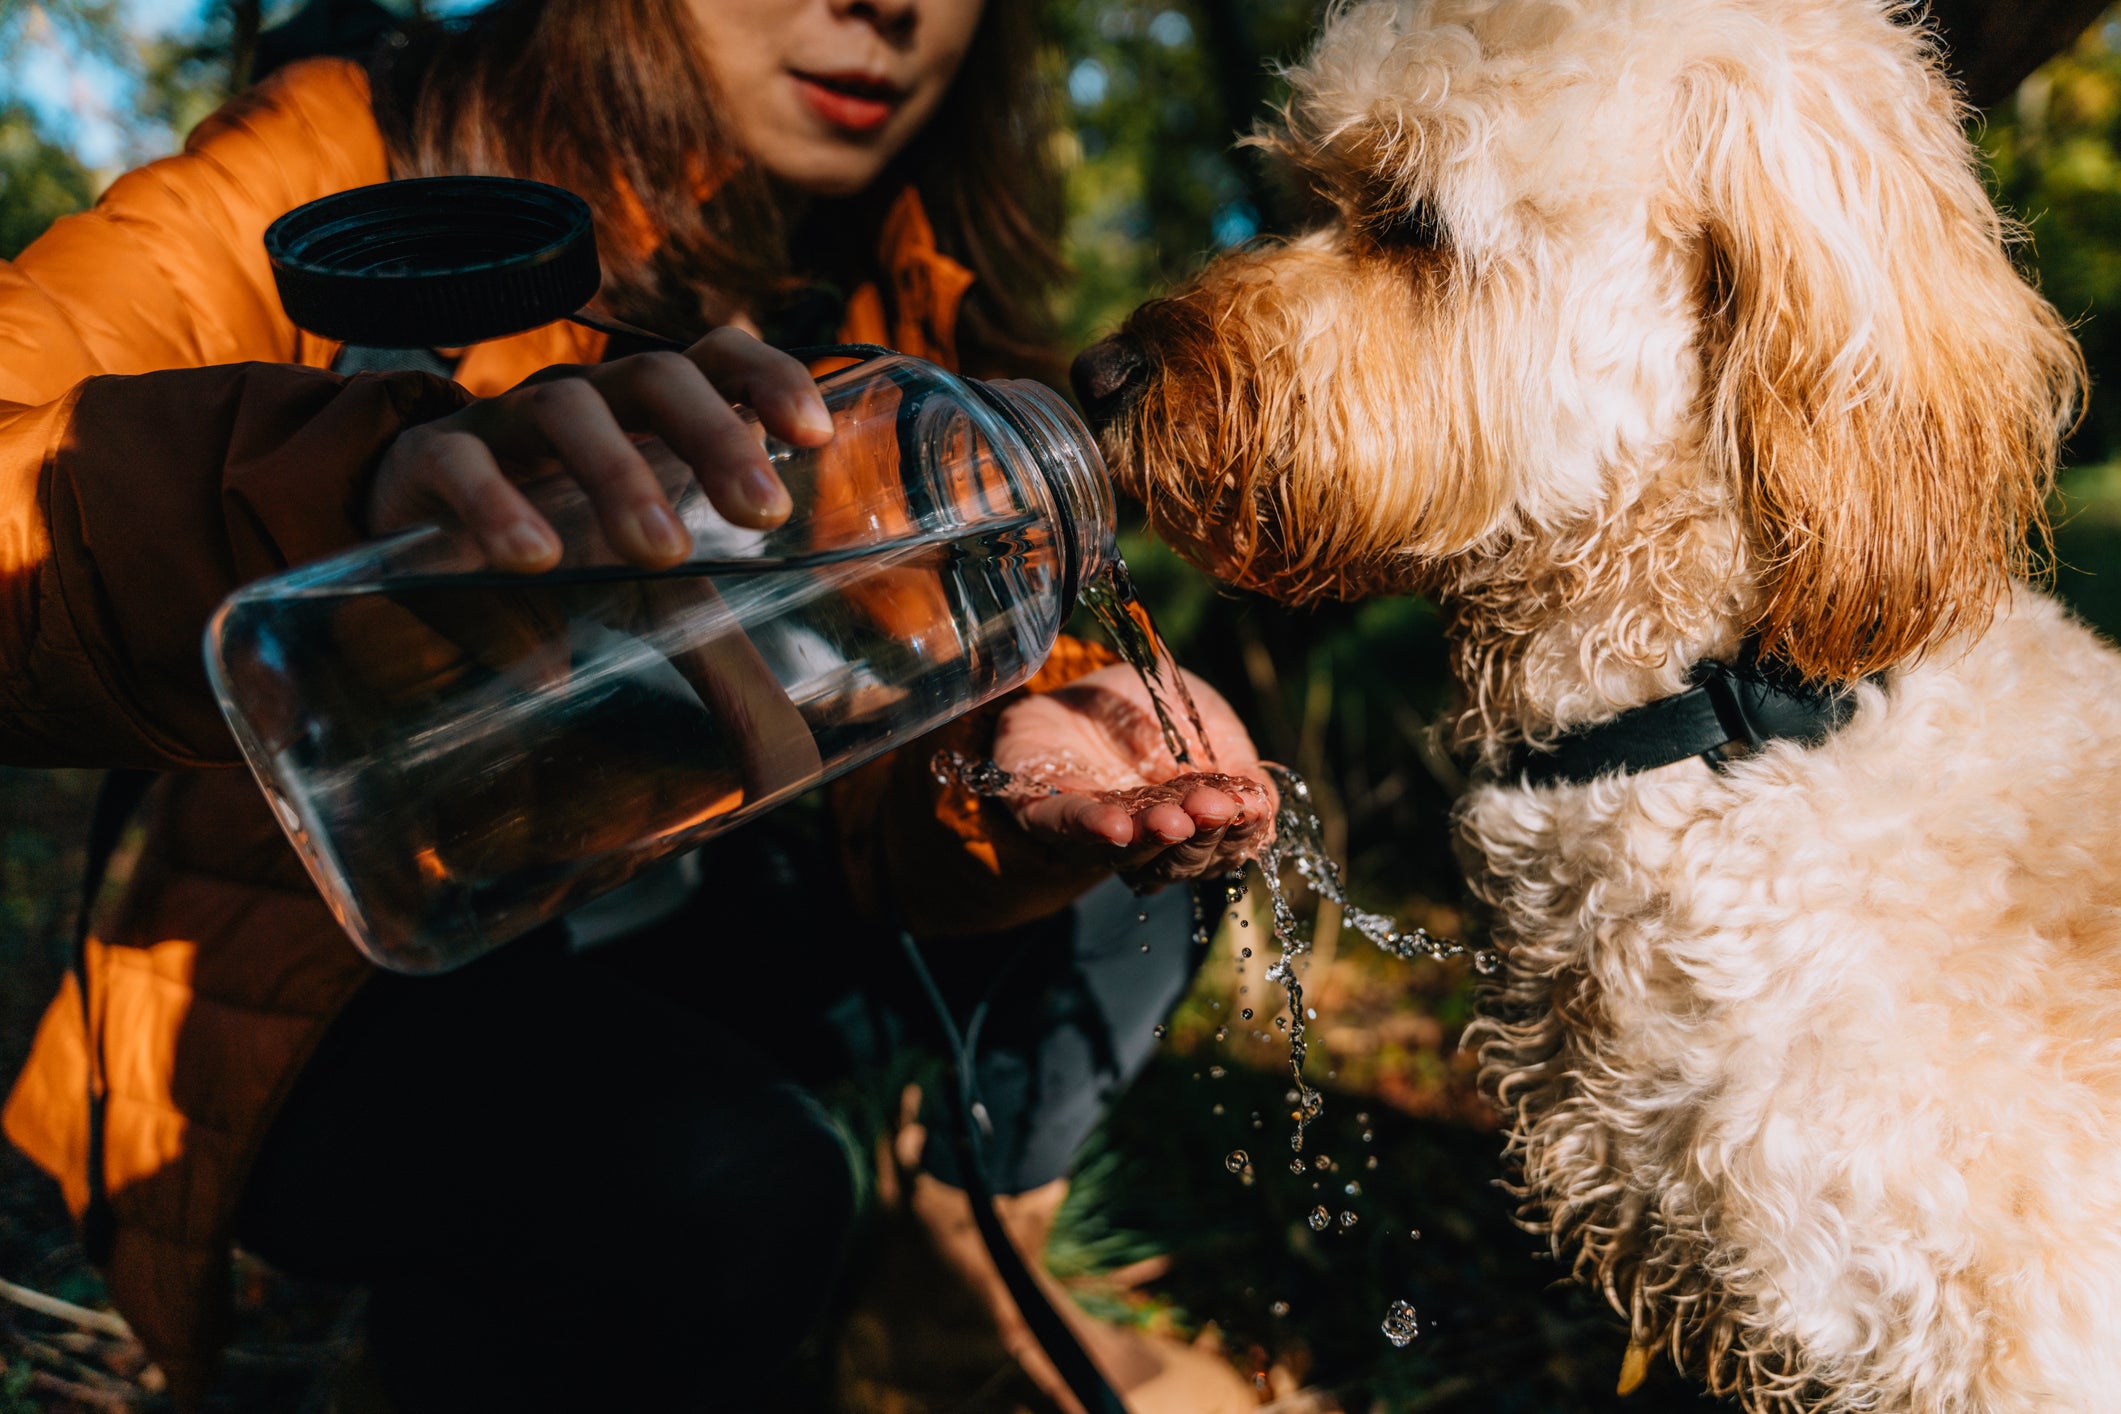 Tutora dando água de garrafa para cãozinho peludo